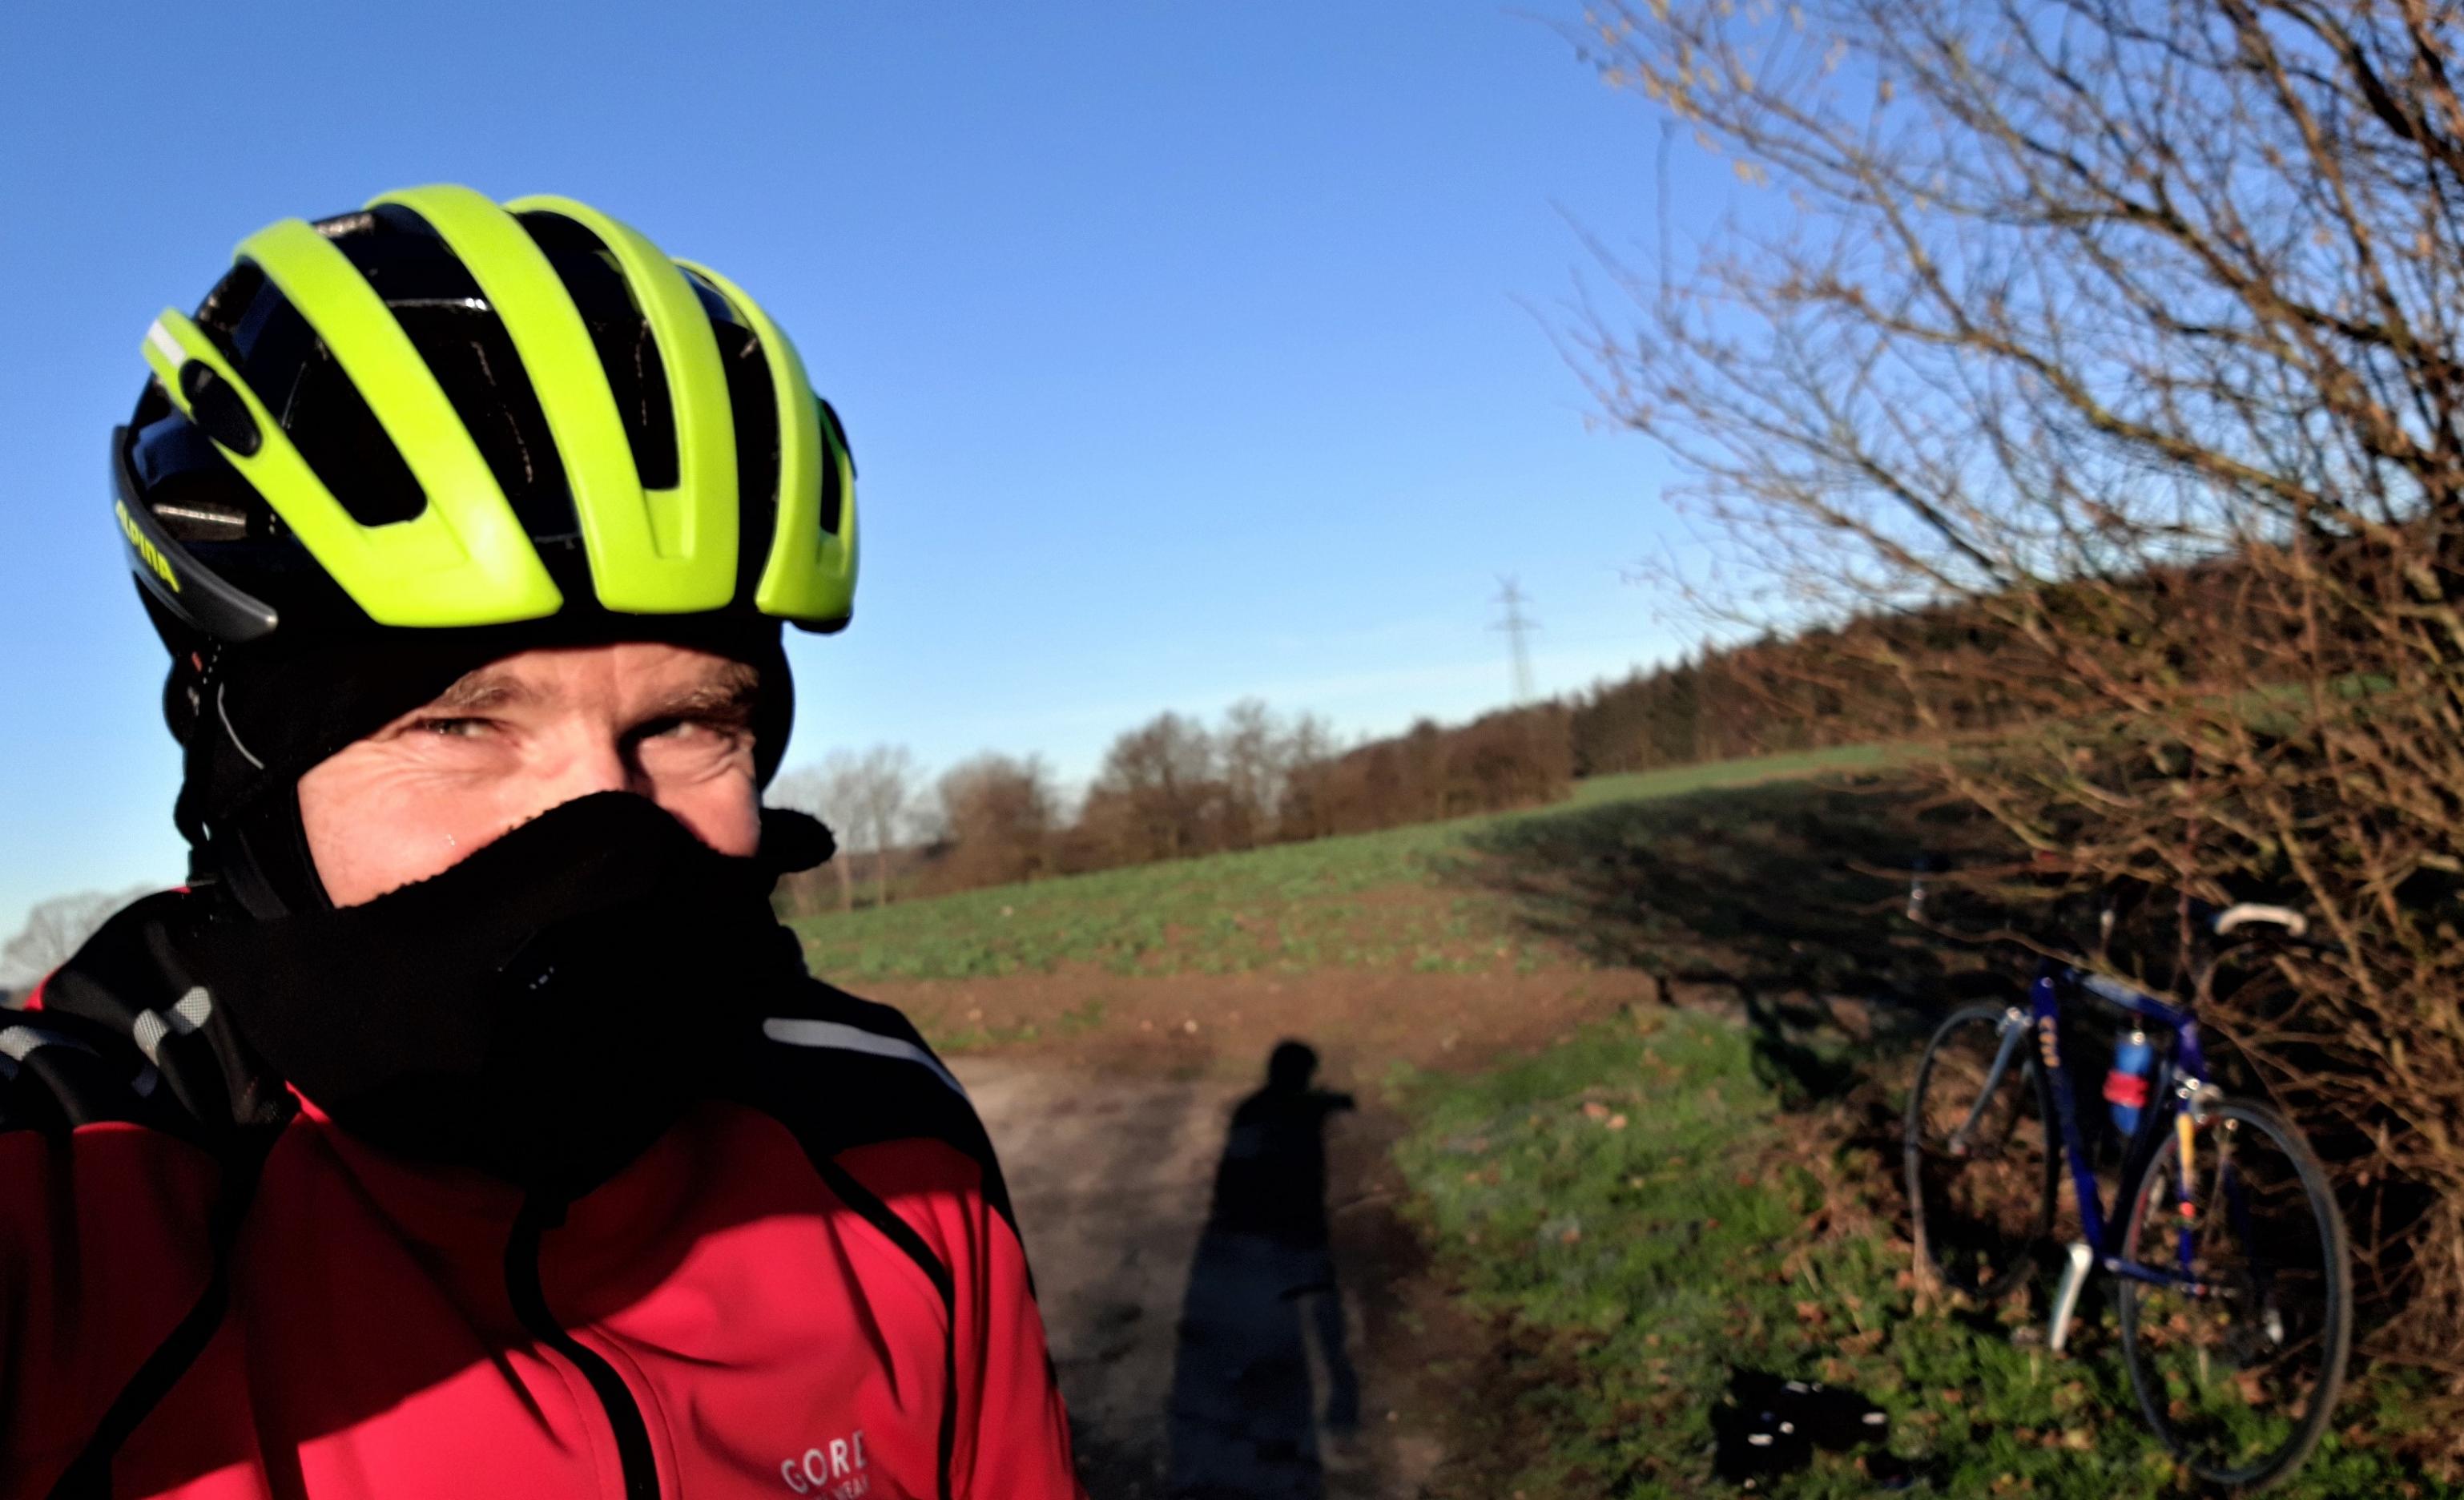 Radfahrer mit Helm, Sturmhaube und Nasenschutz vor Winterlandschaft.